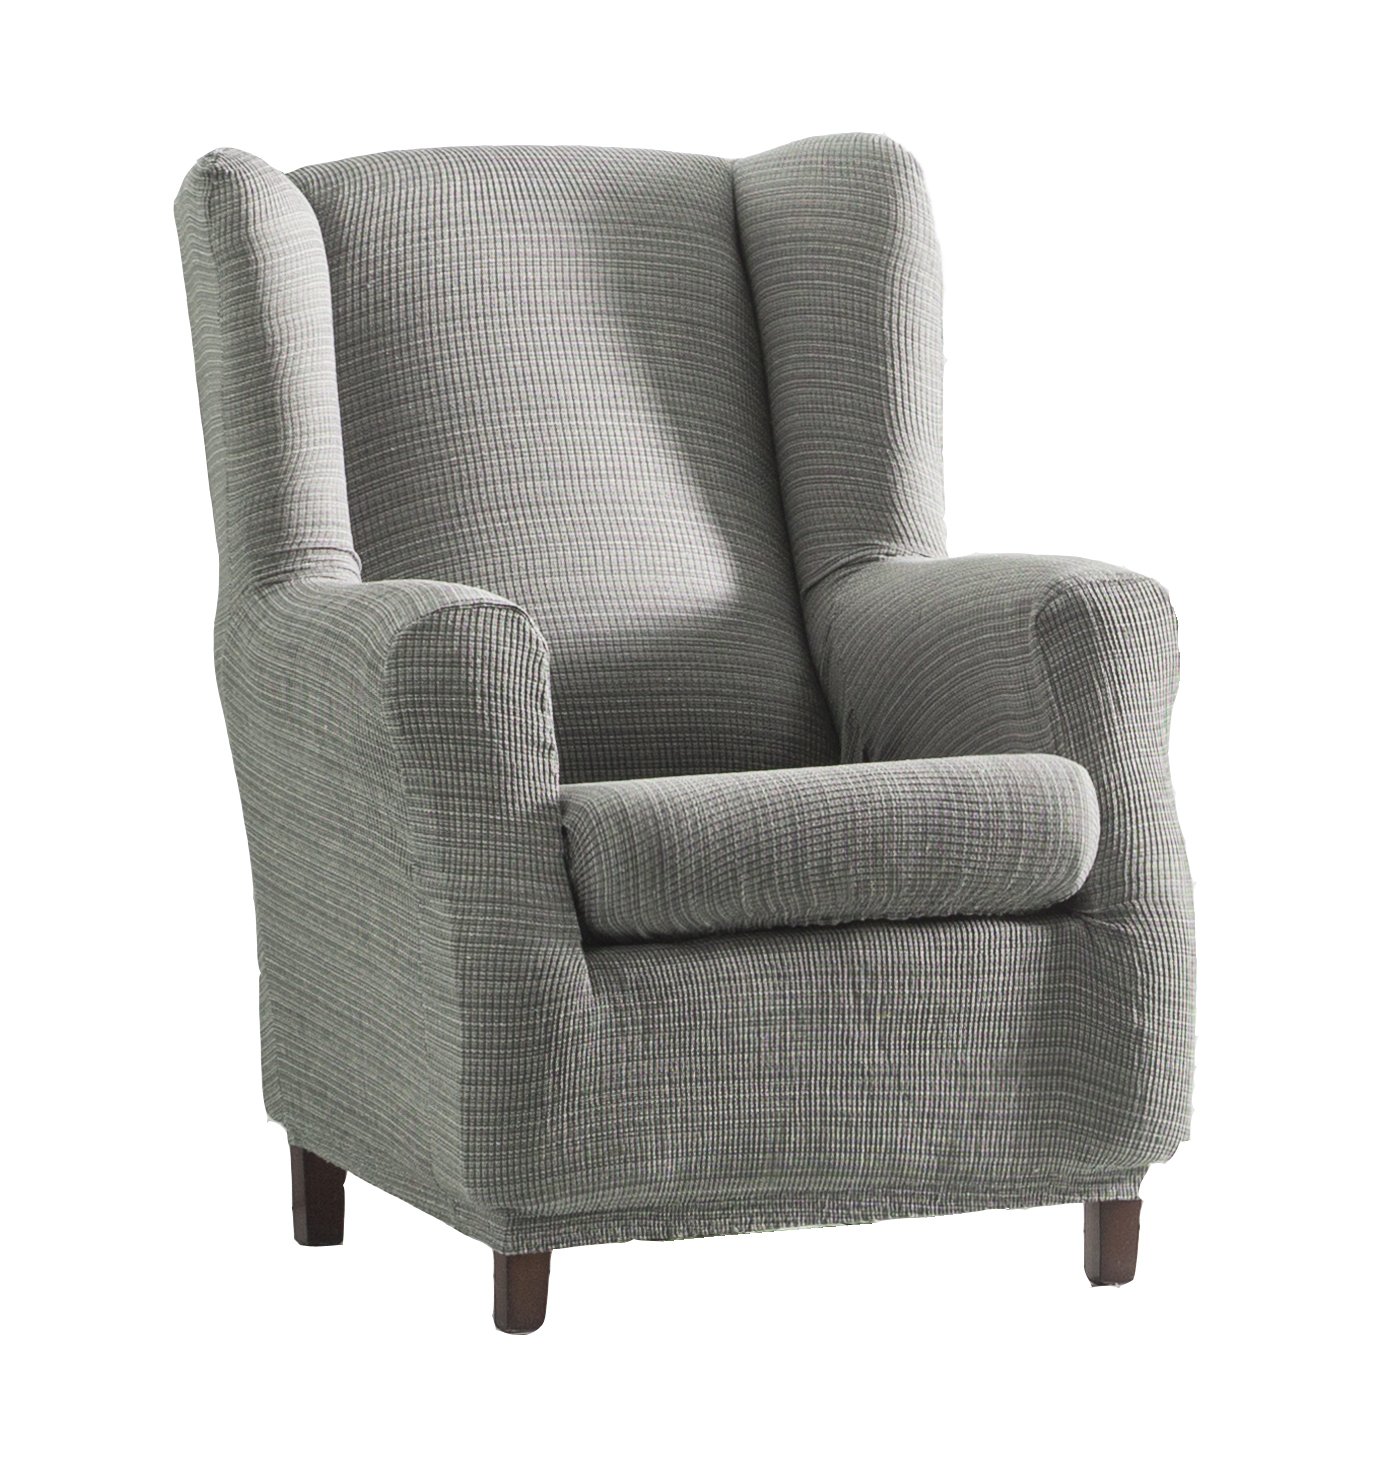 Eysa Aquiles elastisch sofa überwurf ohrensessel farbe 06-grau, Polyester-Baumwolle, 70-90 x 60-80 x 90-110 cm